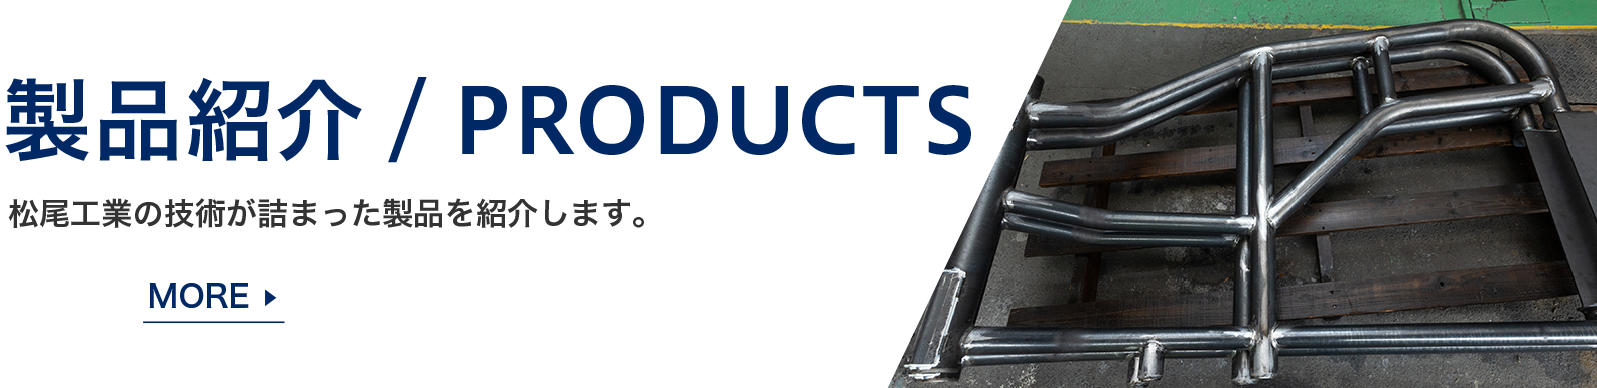 製品紹介-PRODUCTS 松尾工業の技術が詰まった製品を紹介します。